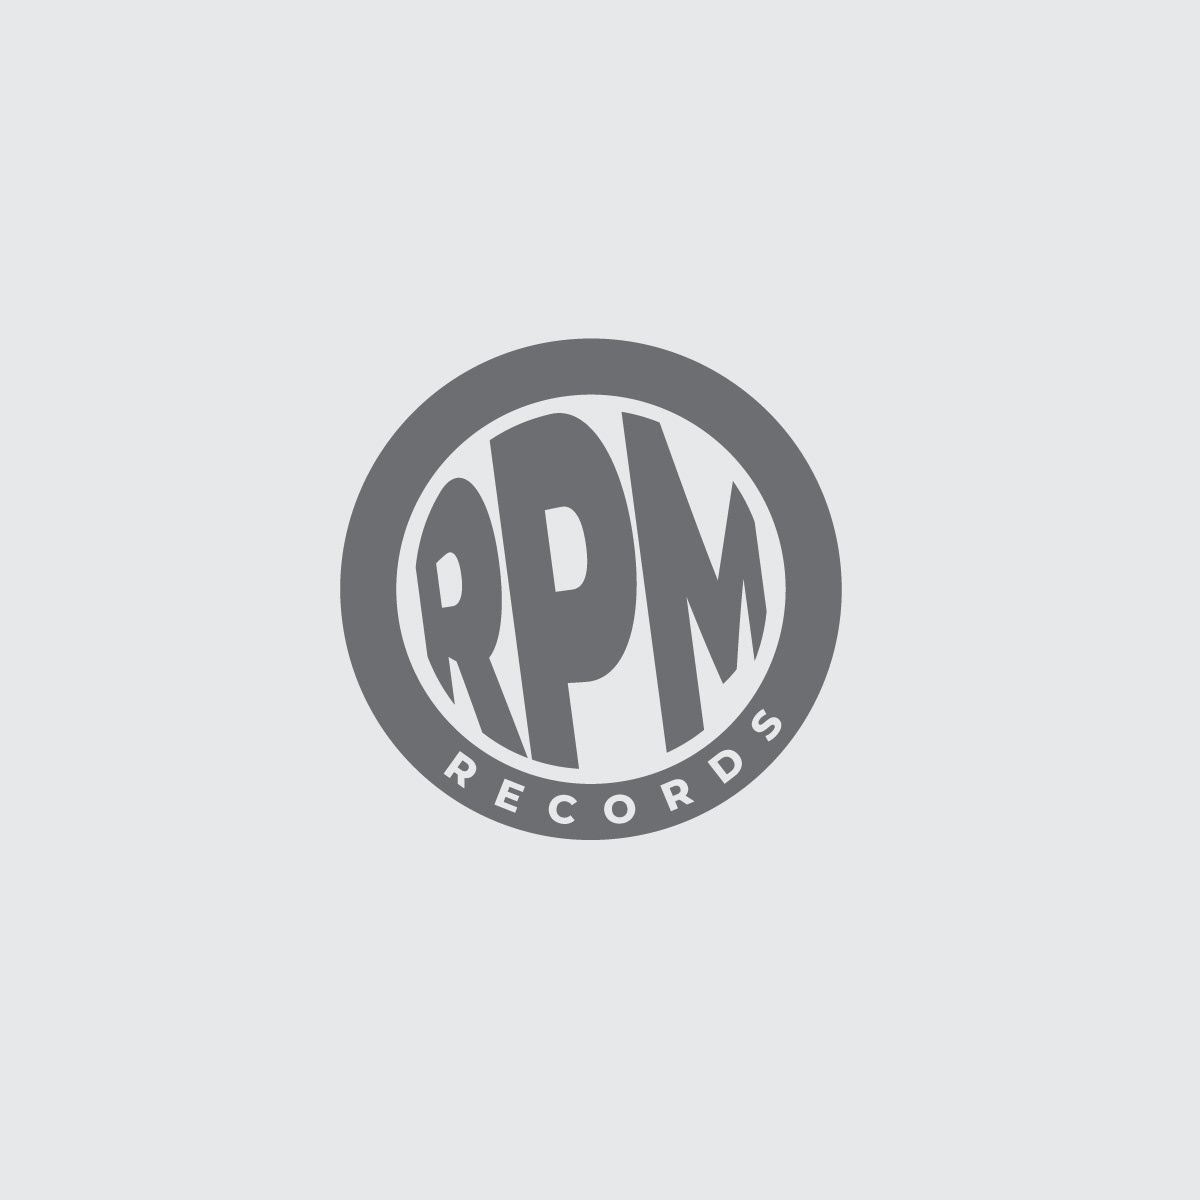 album art brand identity design logos music design